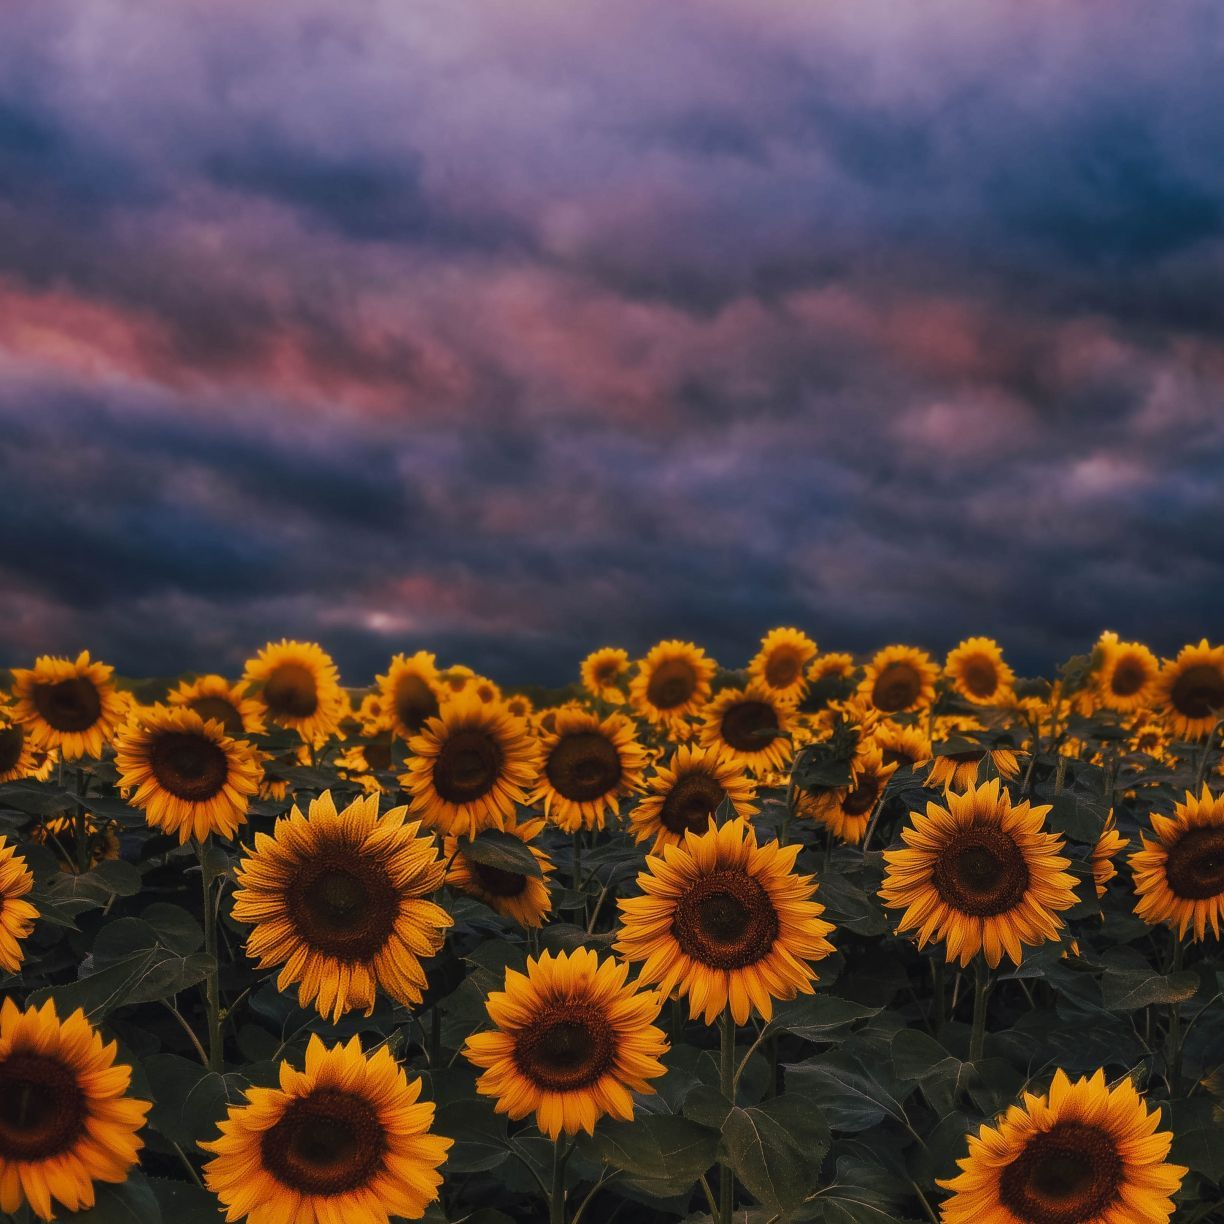 A field of sunflowers under an overcast sky - Farm